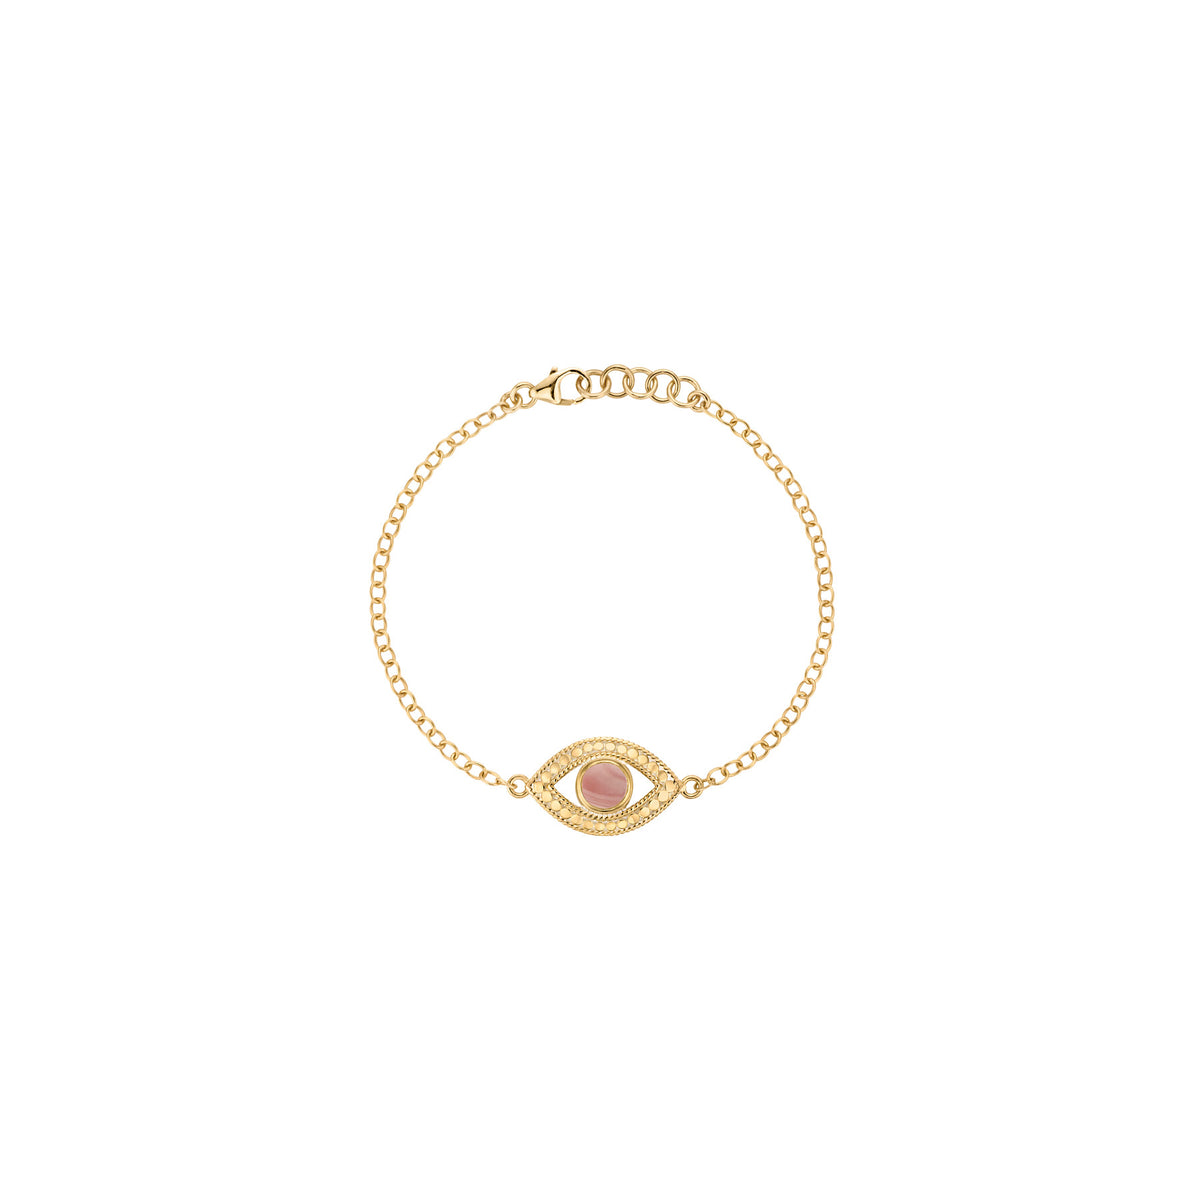 Gold evil eye bracelet with pink opal stone 